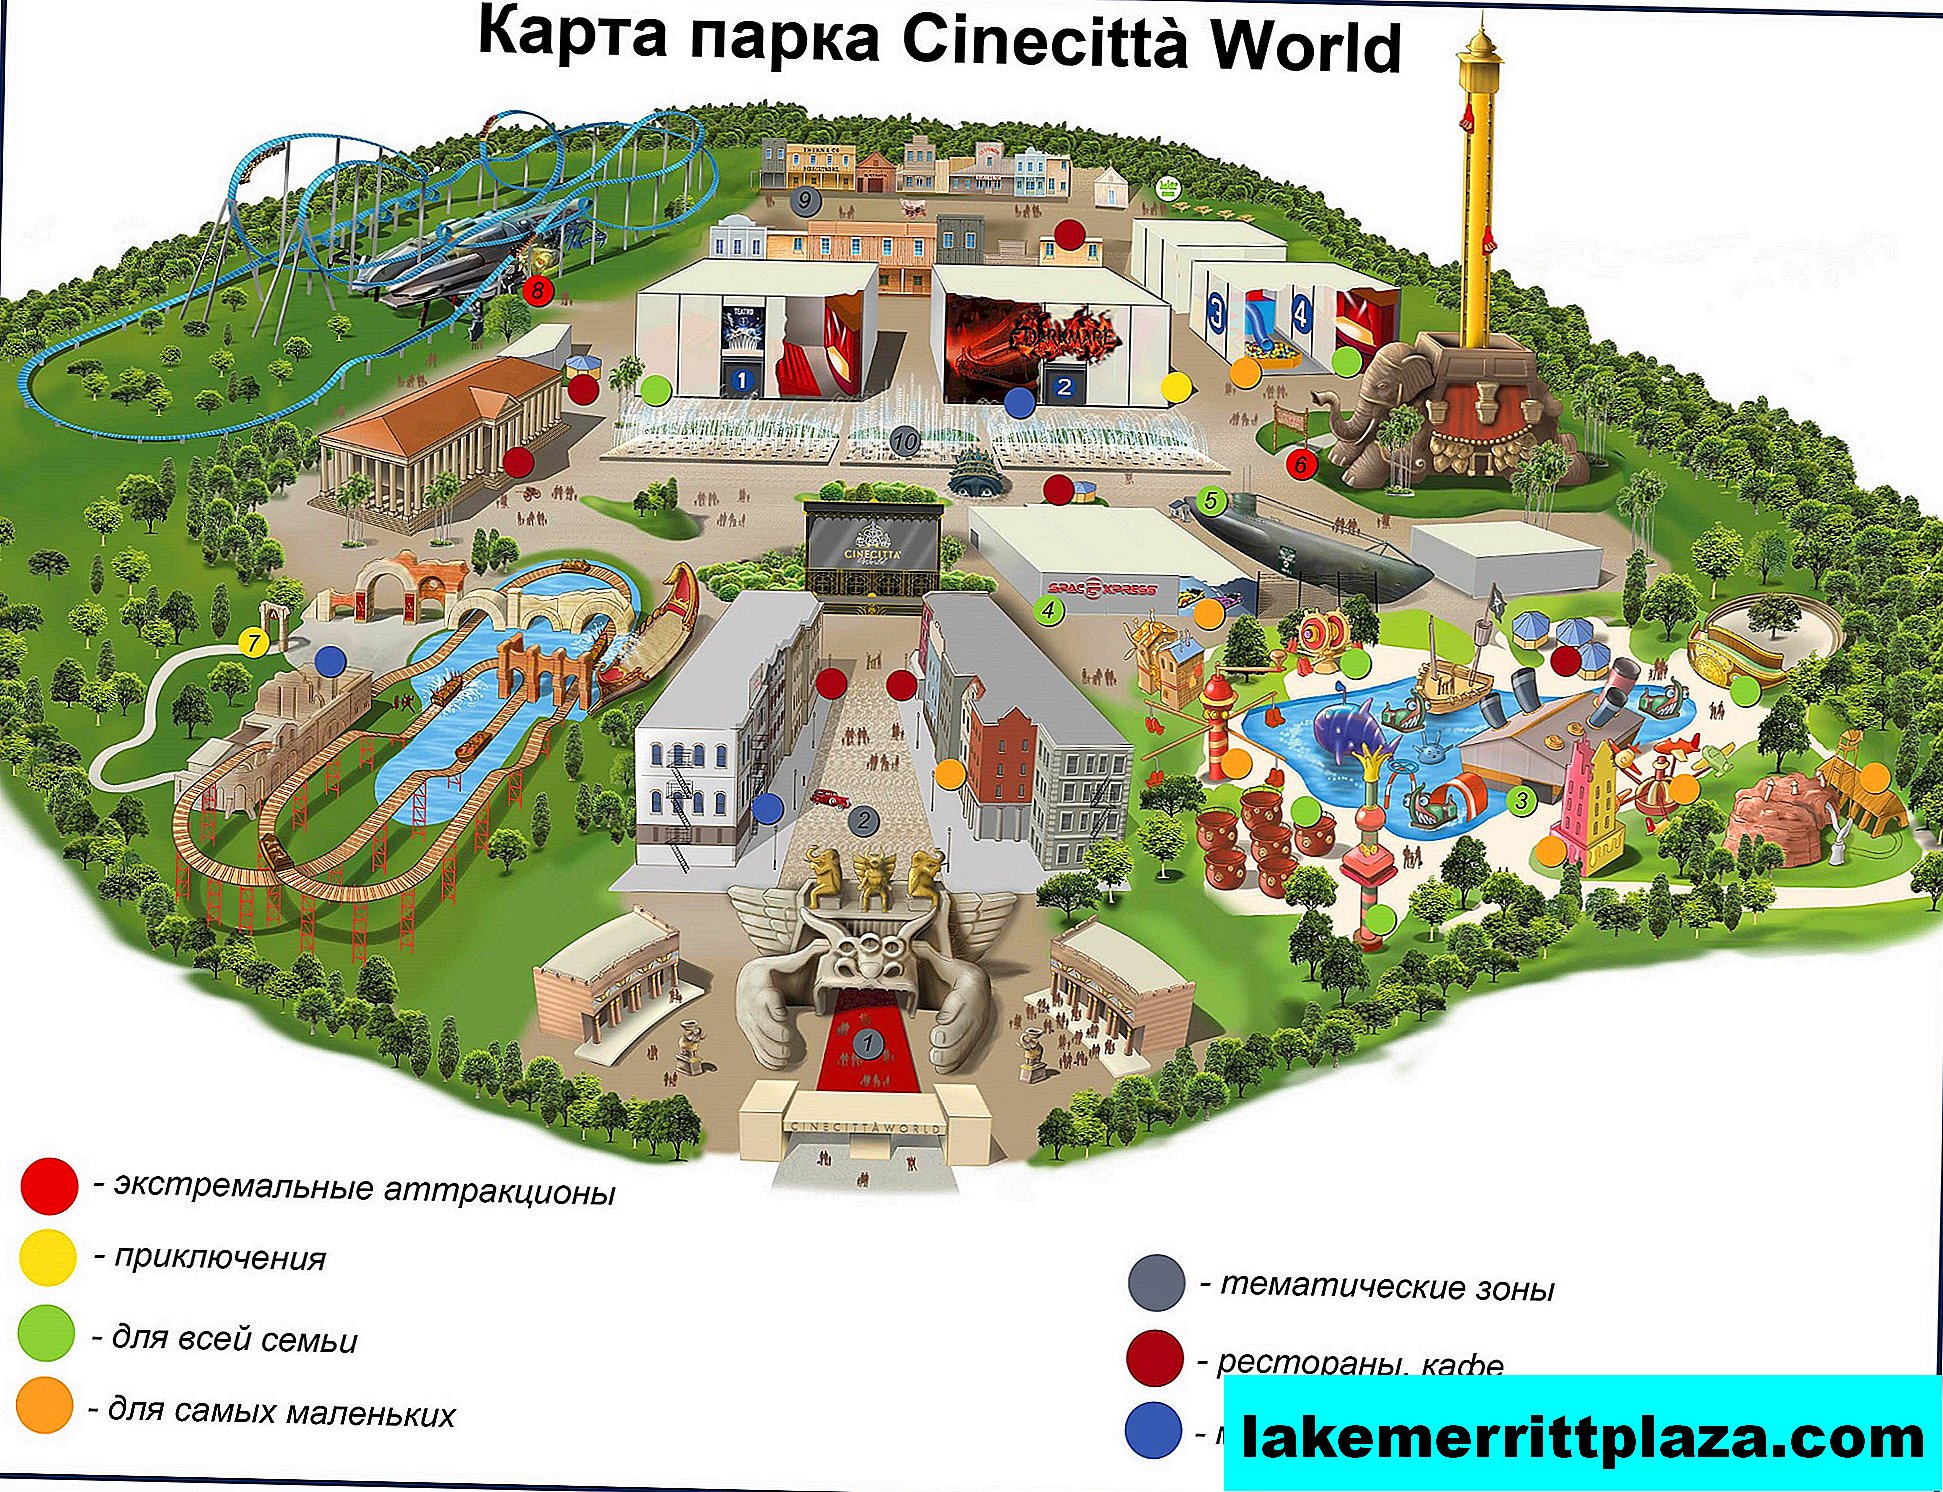 Cinechitta World - Italiens erster Kinopark für Kinder und Erwachsene